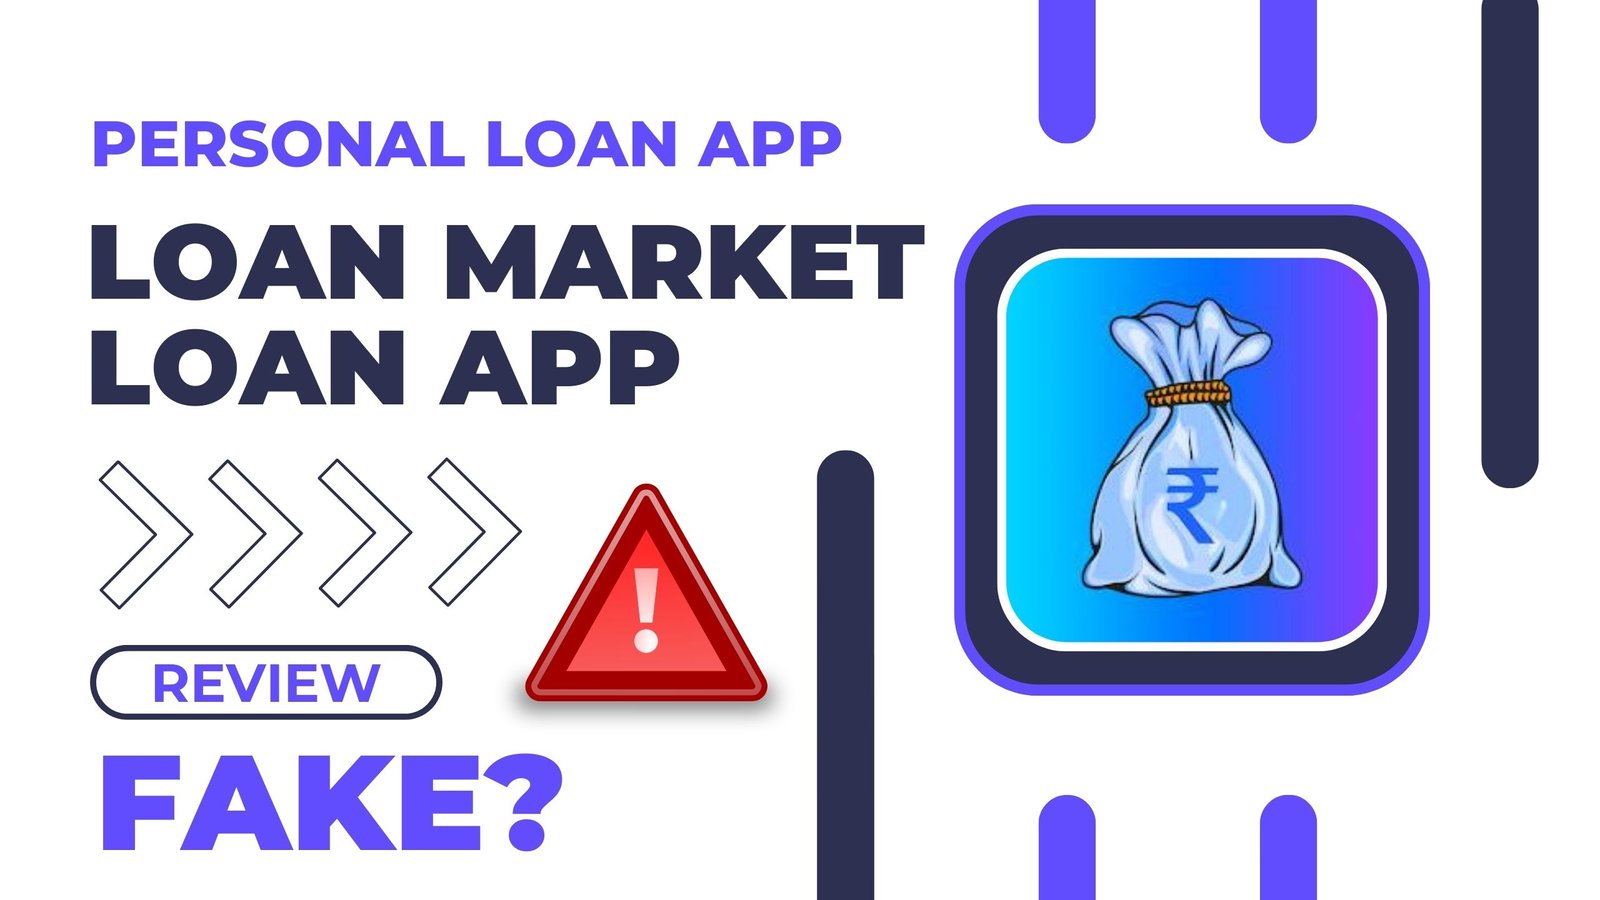 Loan Market Loan App Review